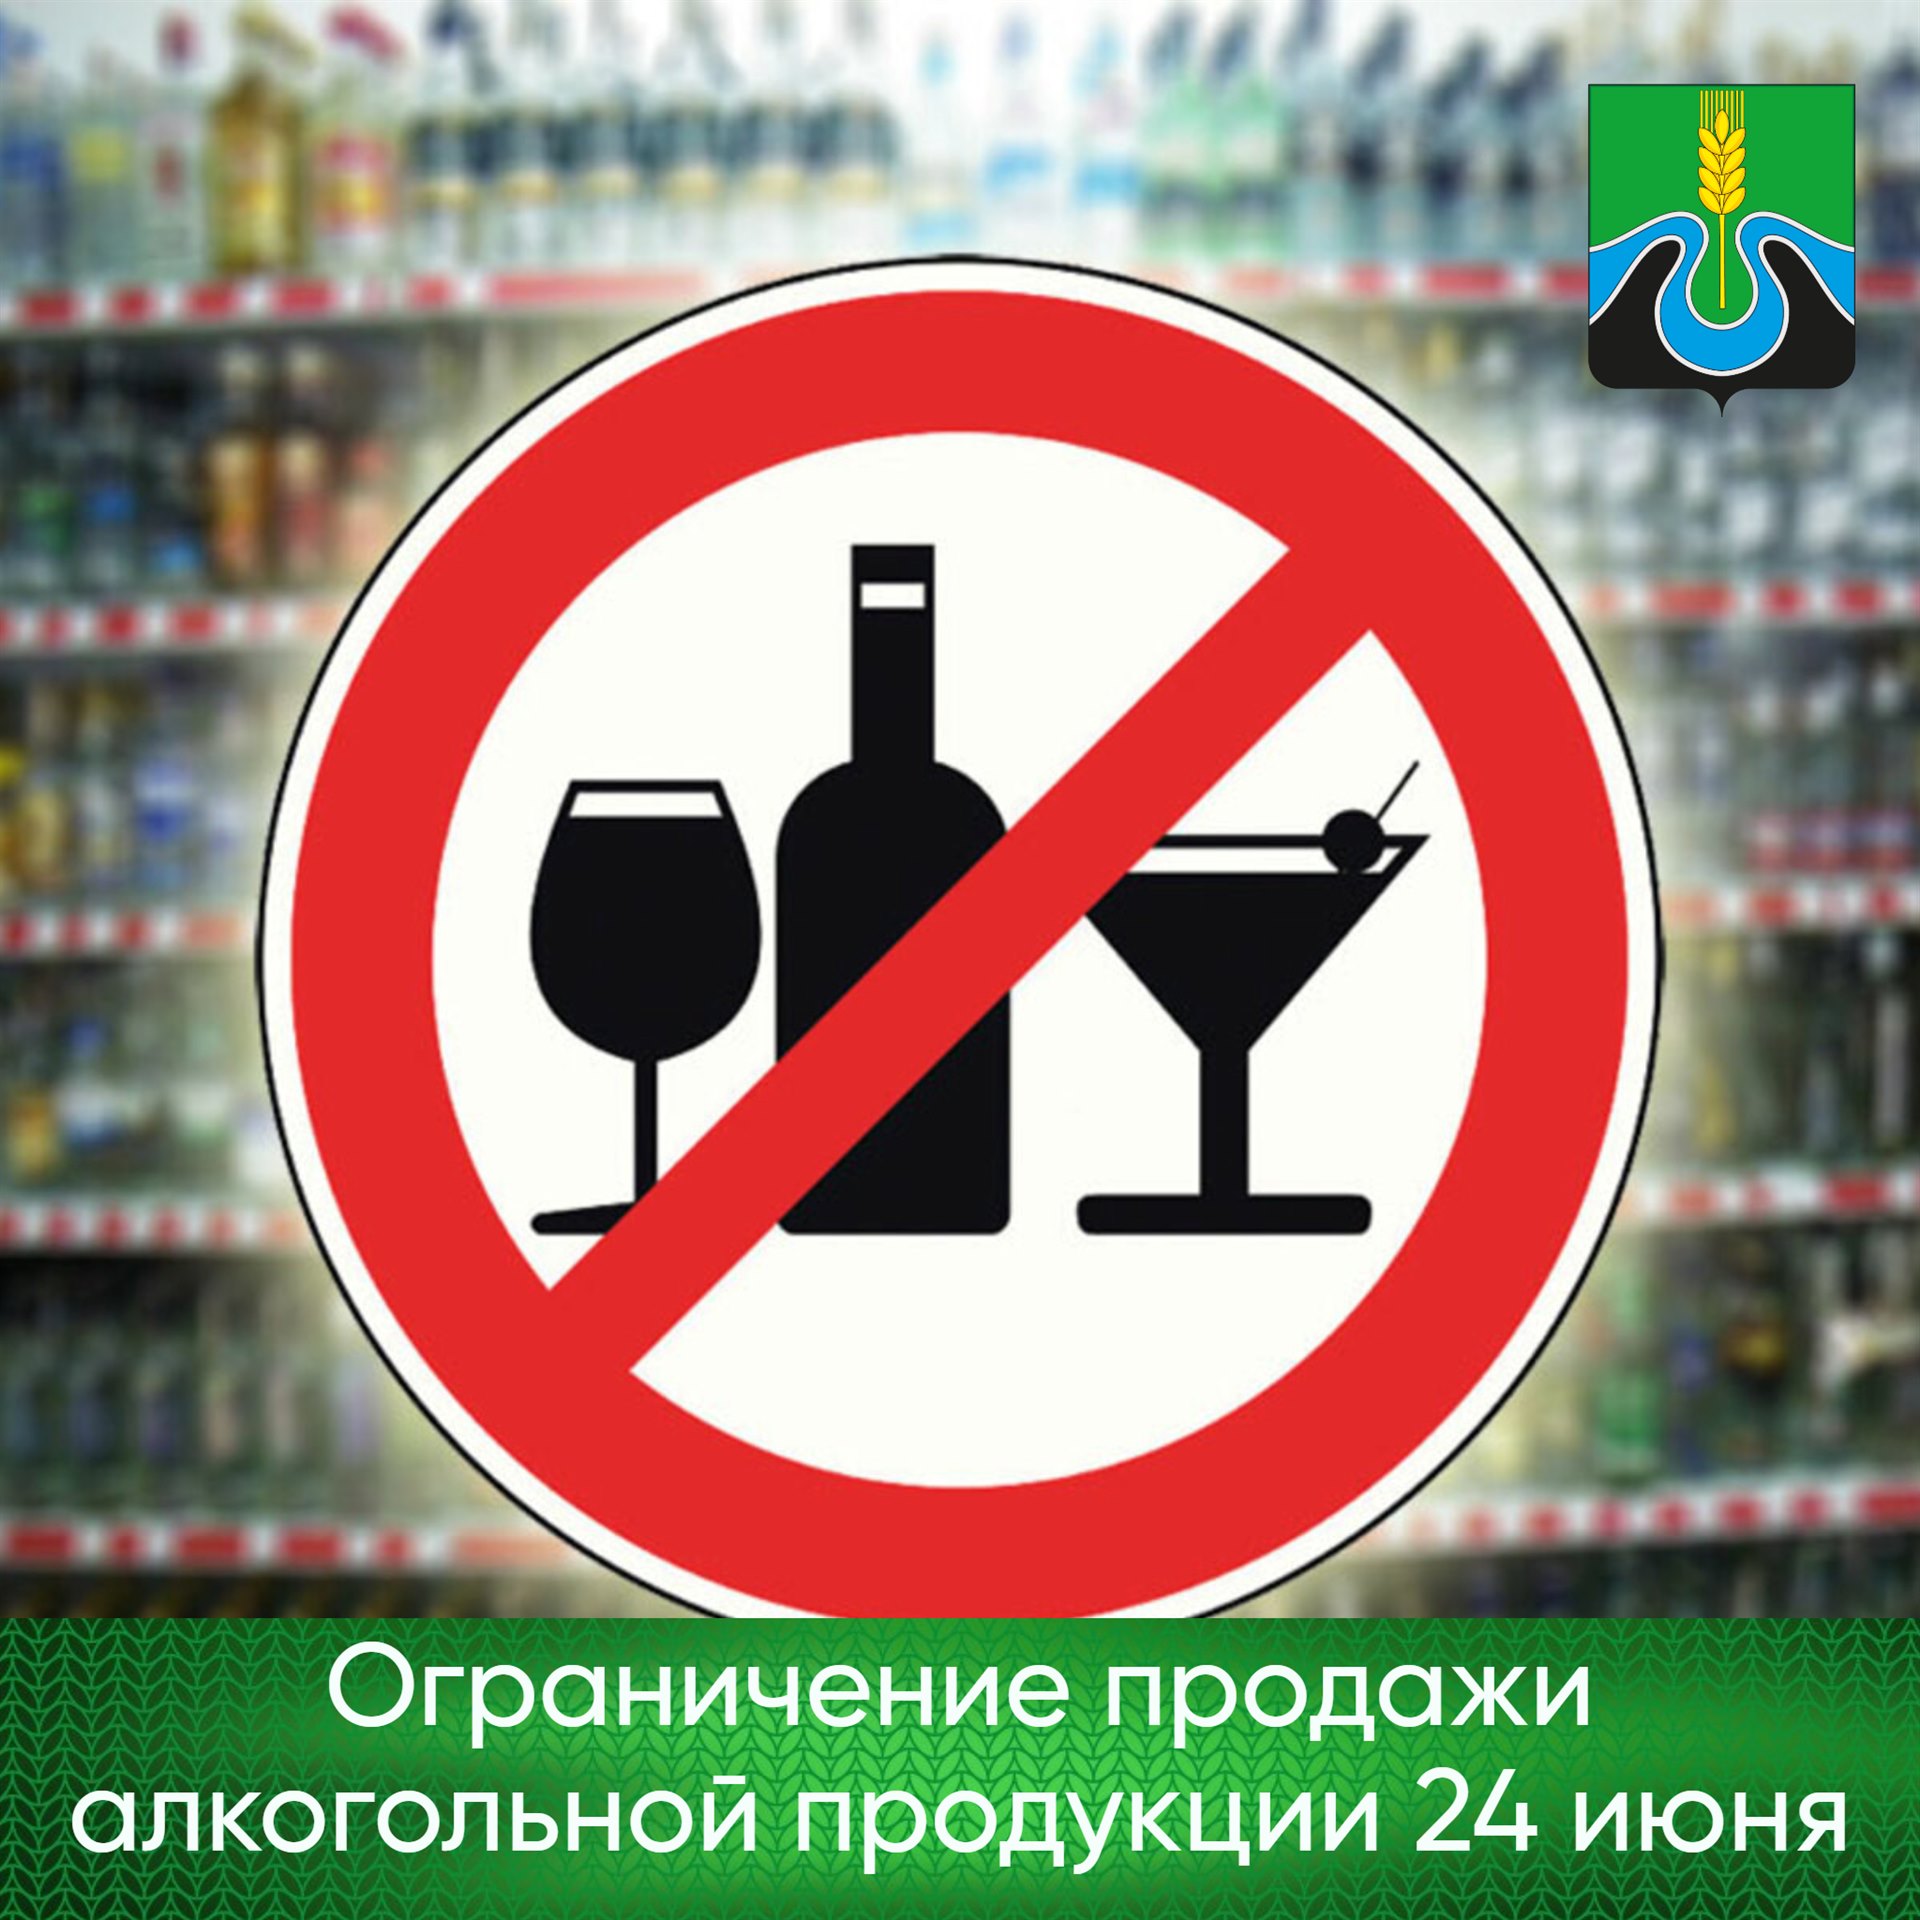 23 июня продажа. Торговля алкоголем запрещена. Ограничинить алкоголь. Реализация алкогольной продукции запрещена.